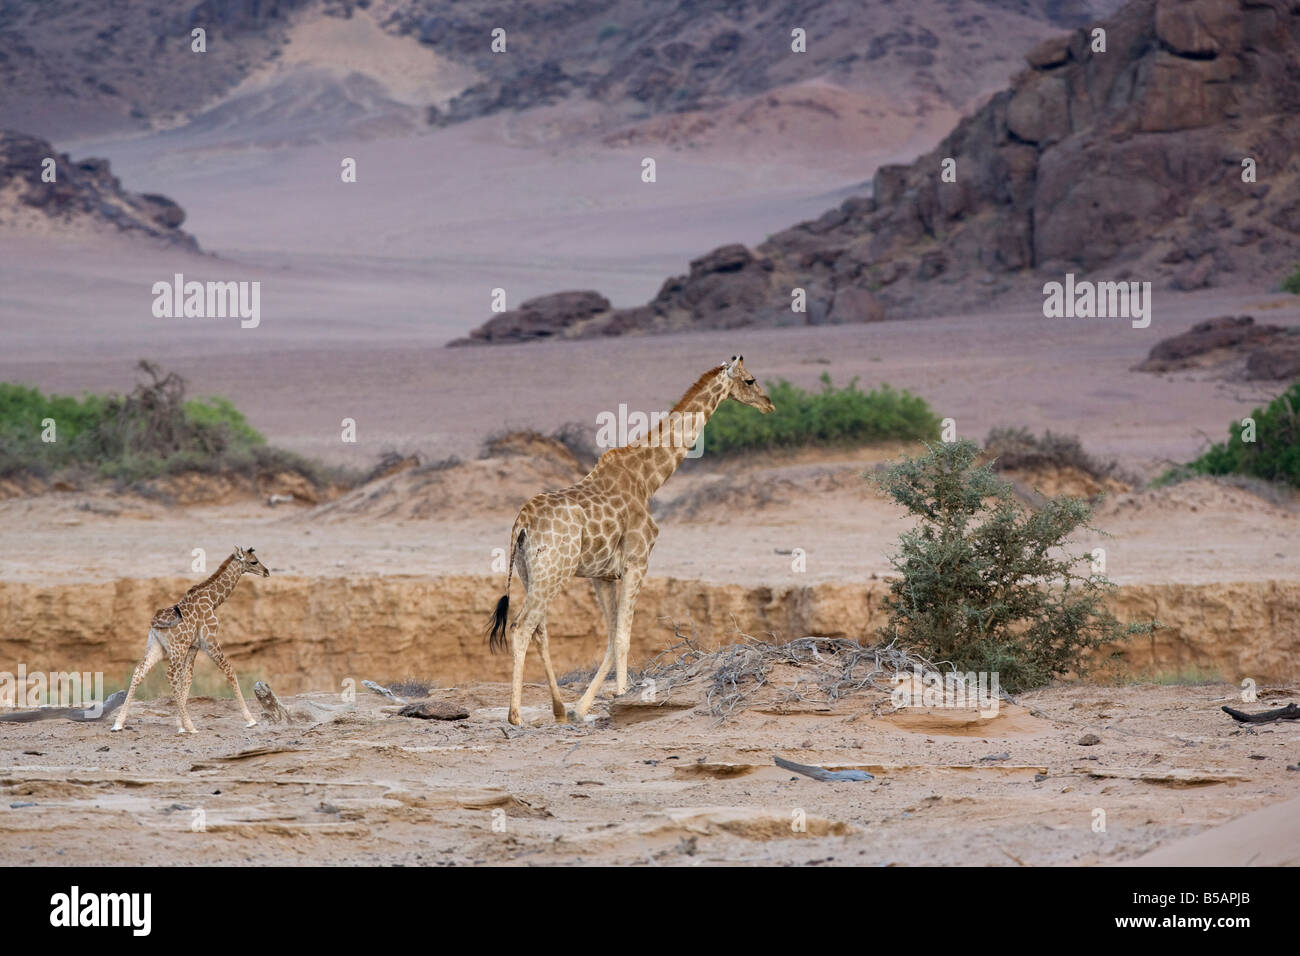 Desert giraffe (Giraffa camelopardalis capensis) with young, Namibia, Africa Stock Photo